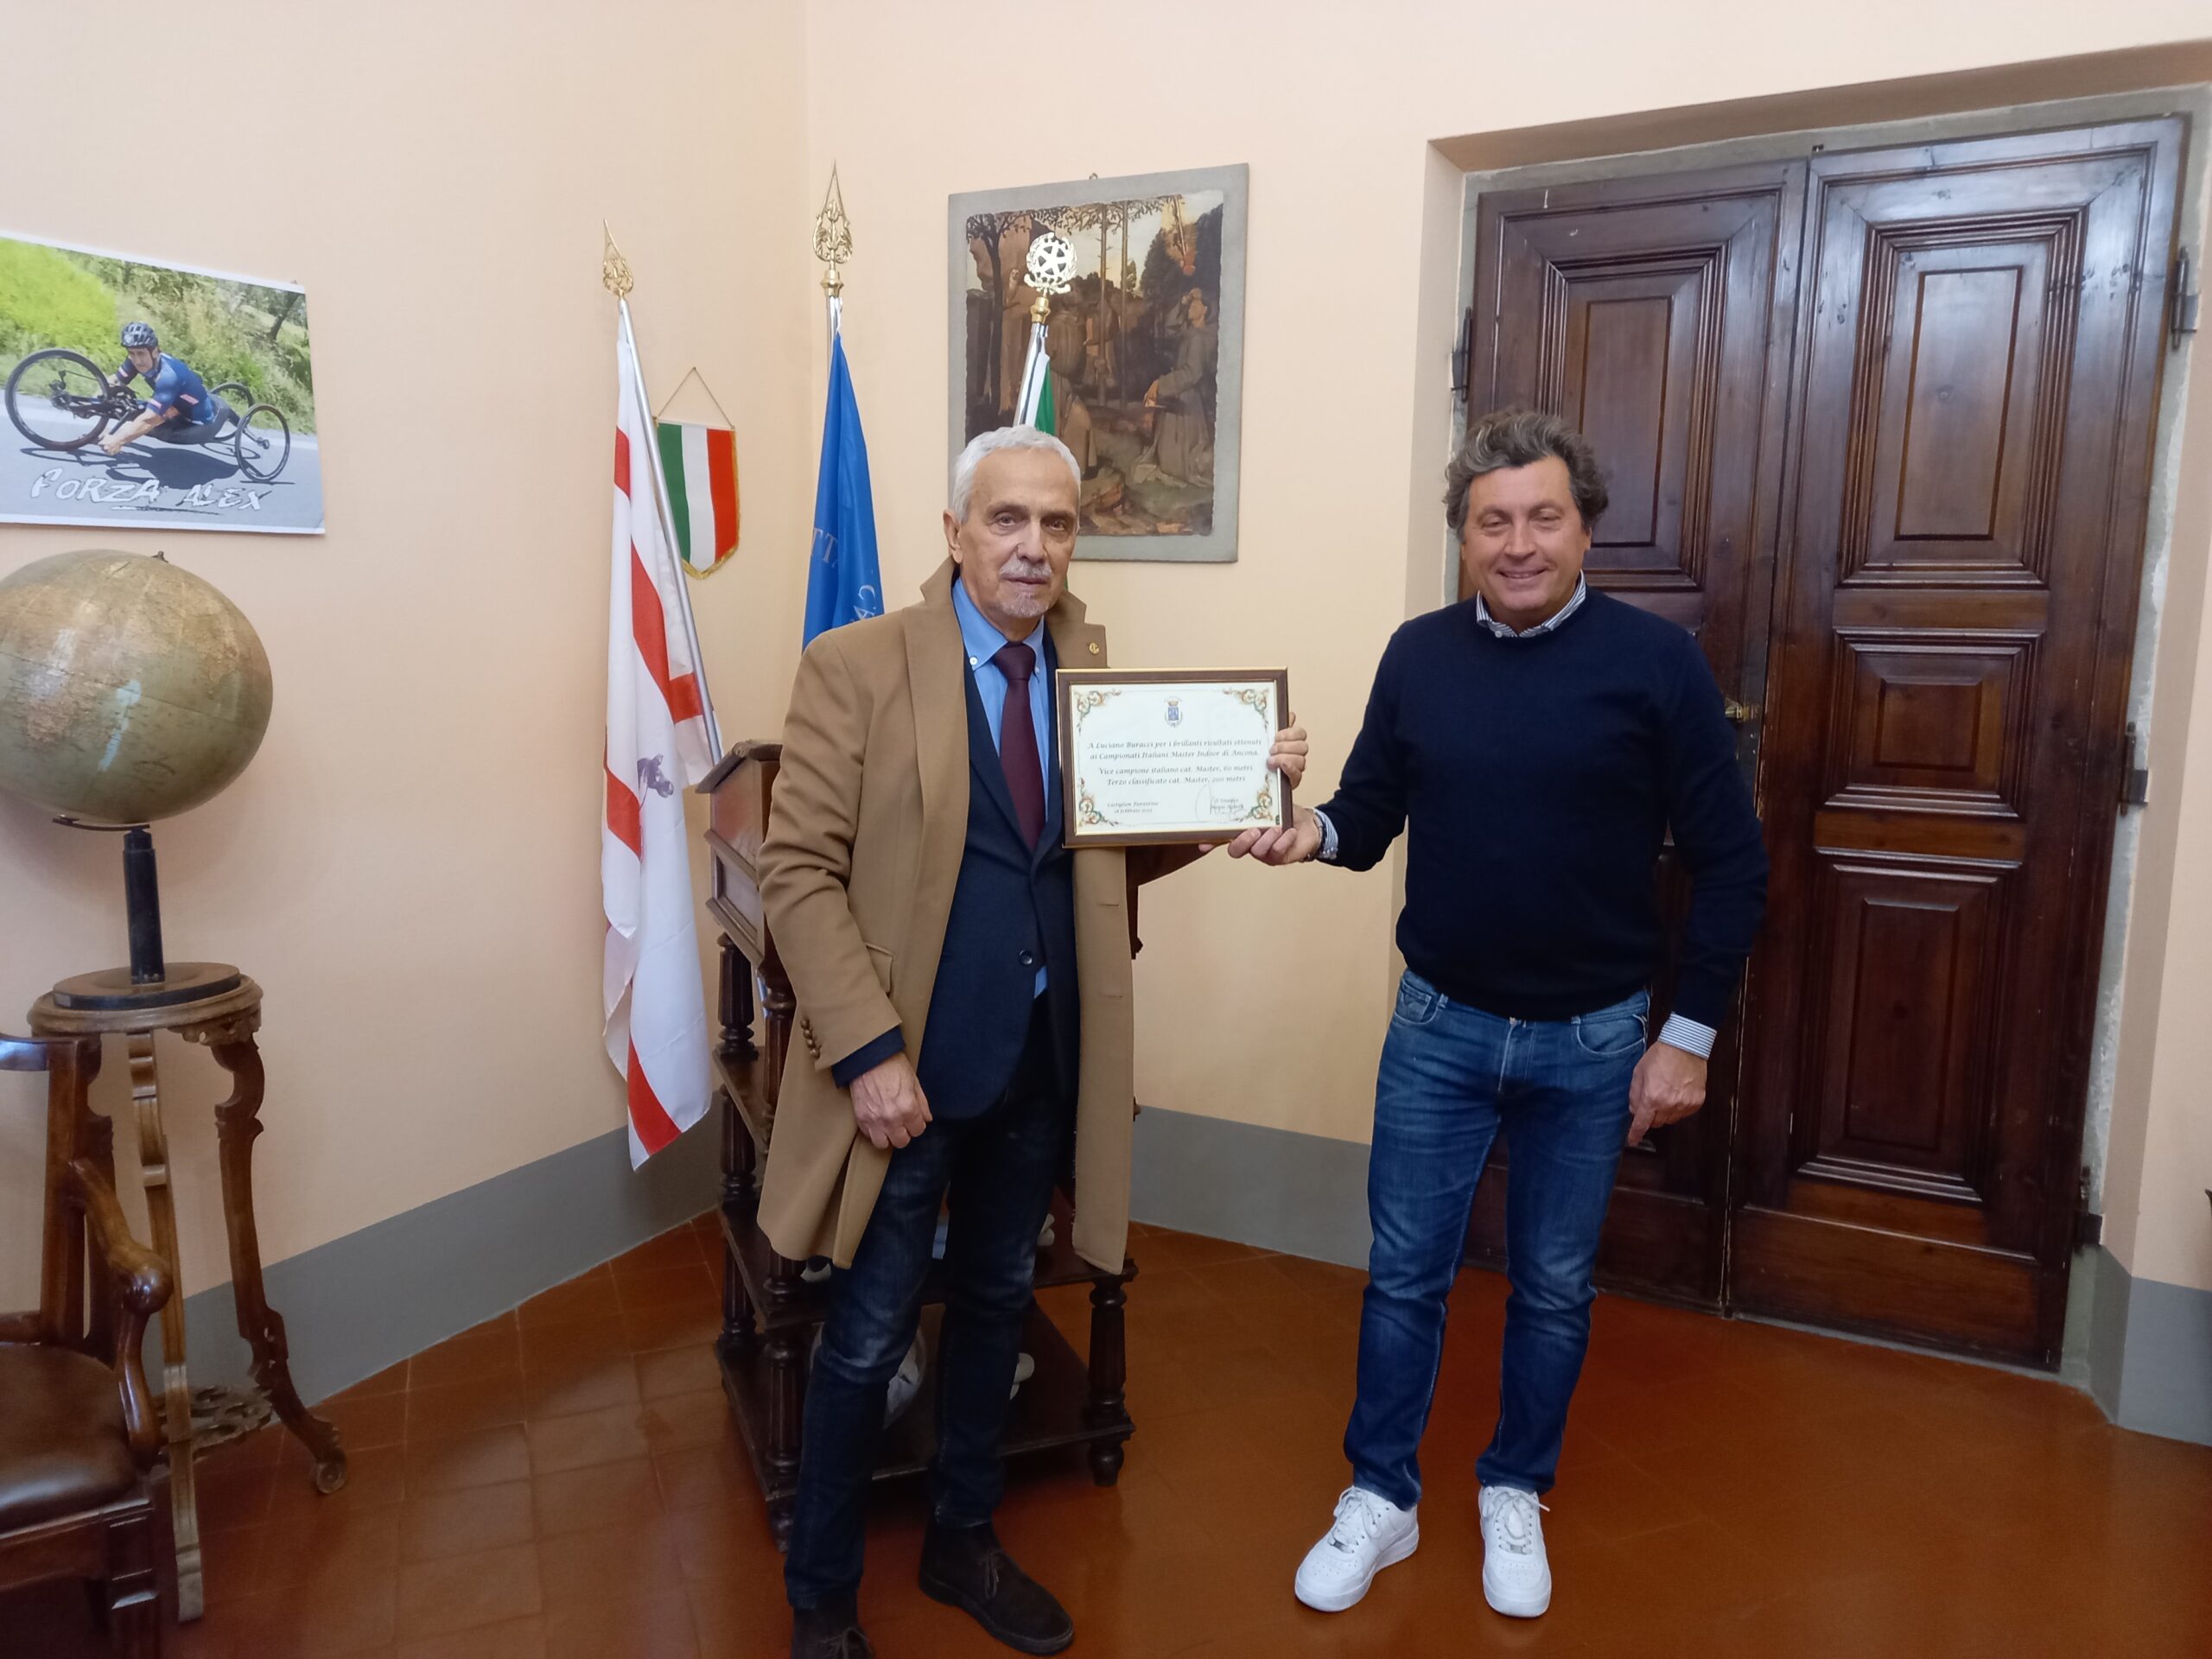 Consegnata targa ricordo a Luciano Buracci per i risultati ottenuti ai Campionati Italiani Master Indoor di Ancona